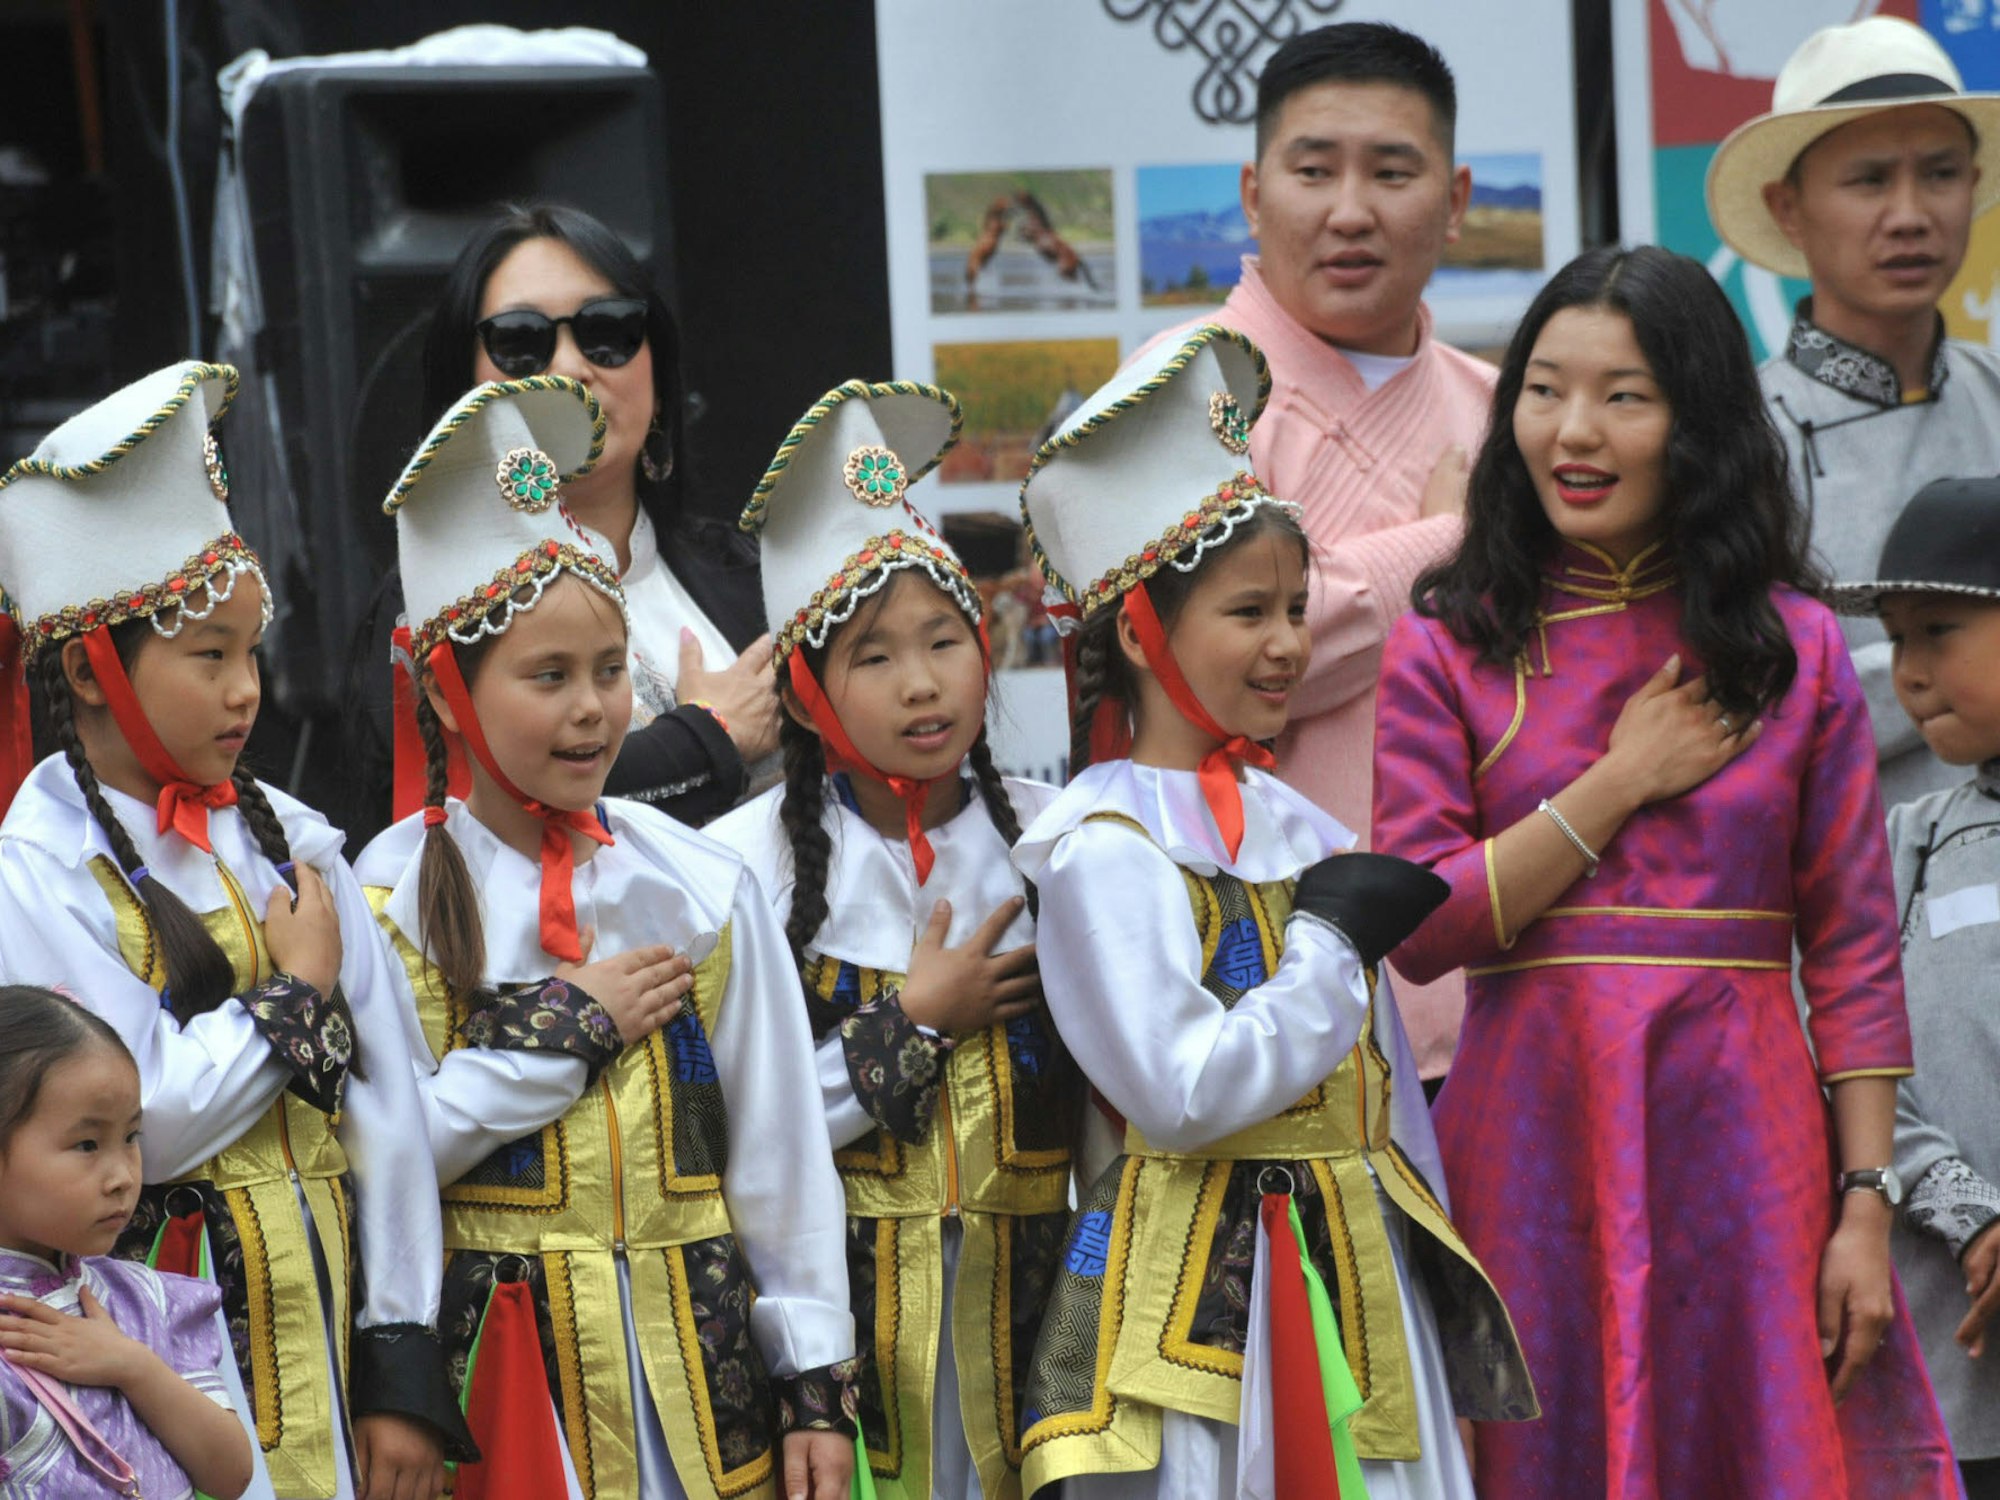 Schüler der mongolischen Schule in Düsseldorf führten in Trachten gewandet traditionelle Tänze auf.